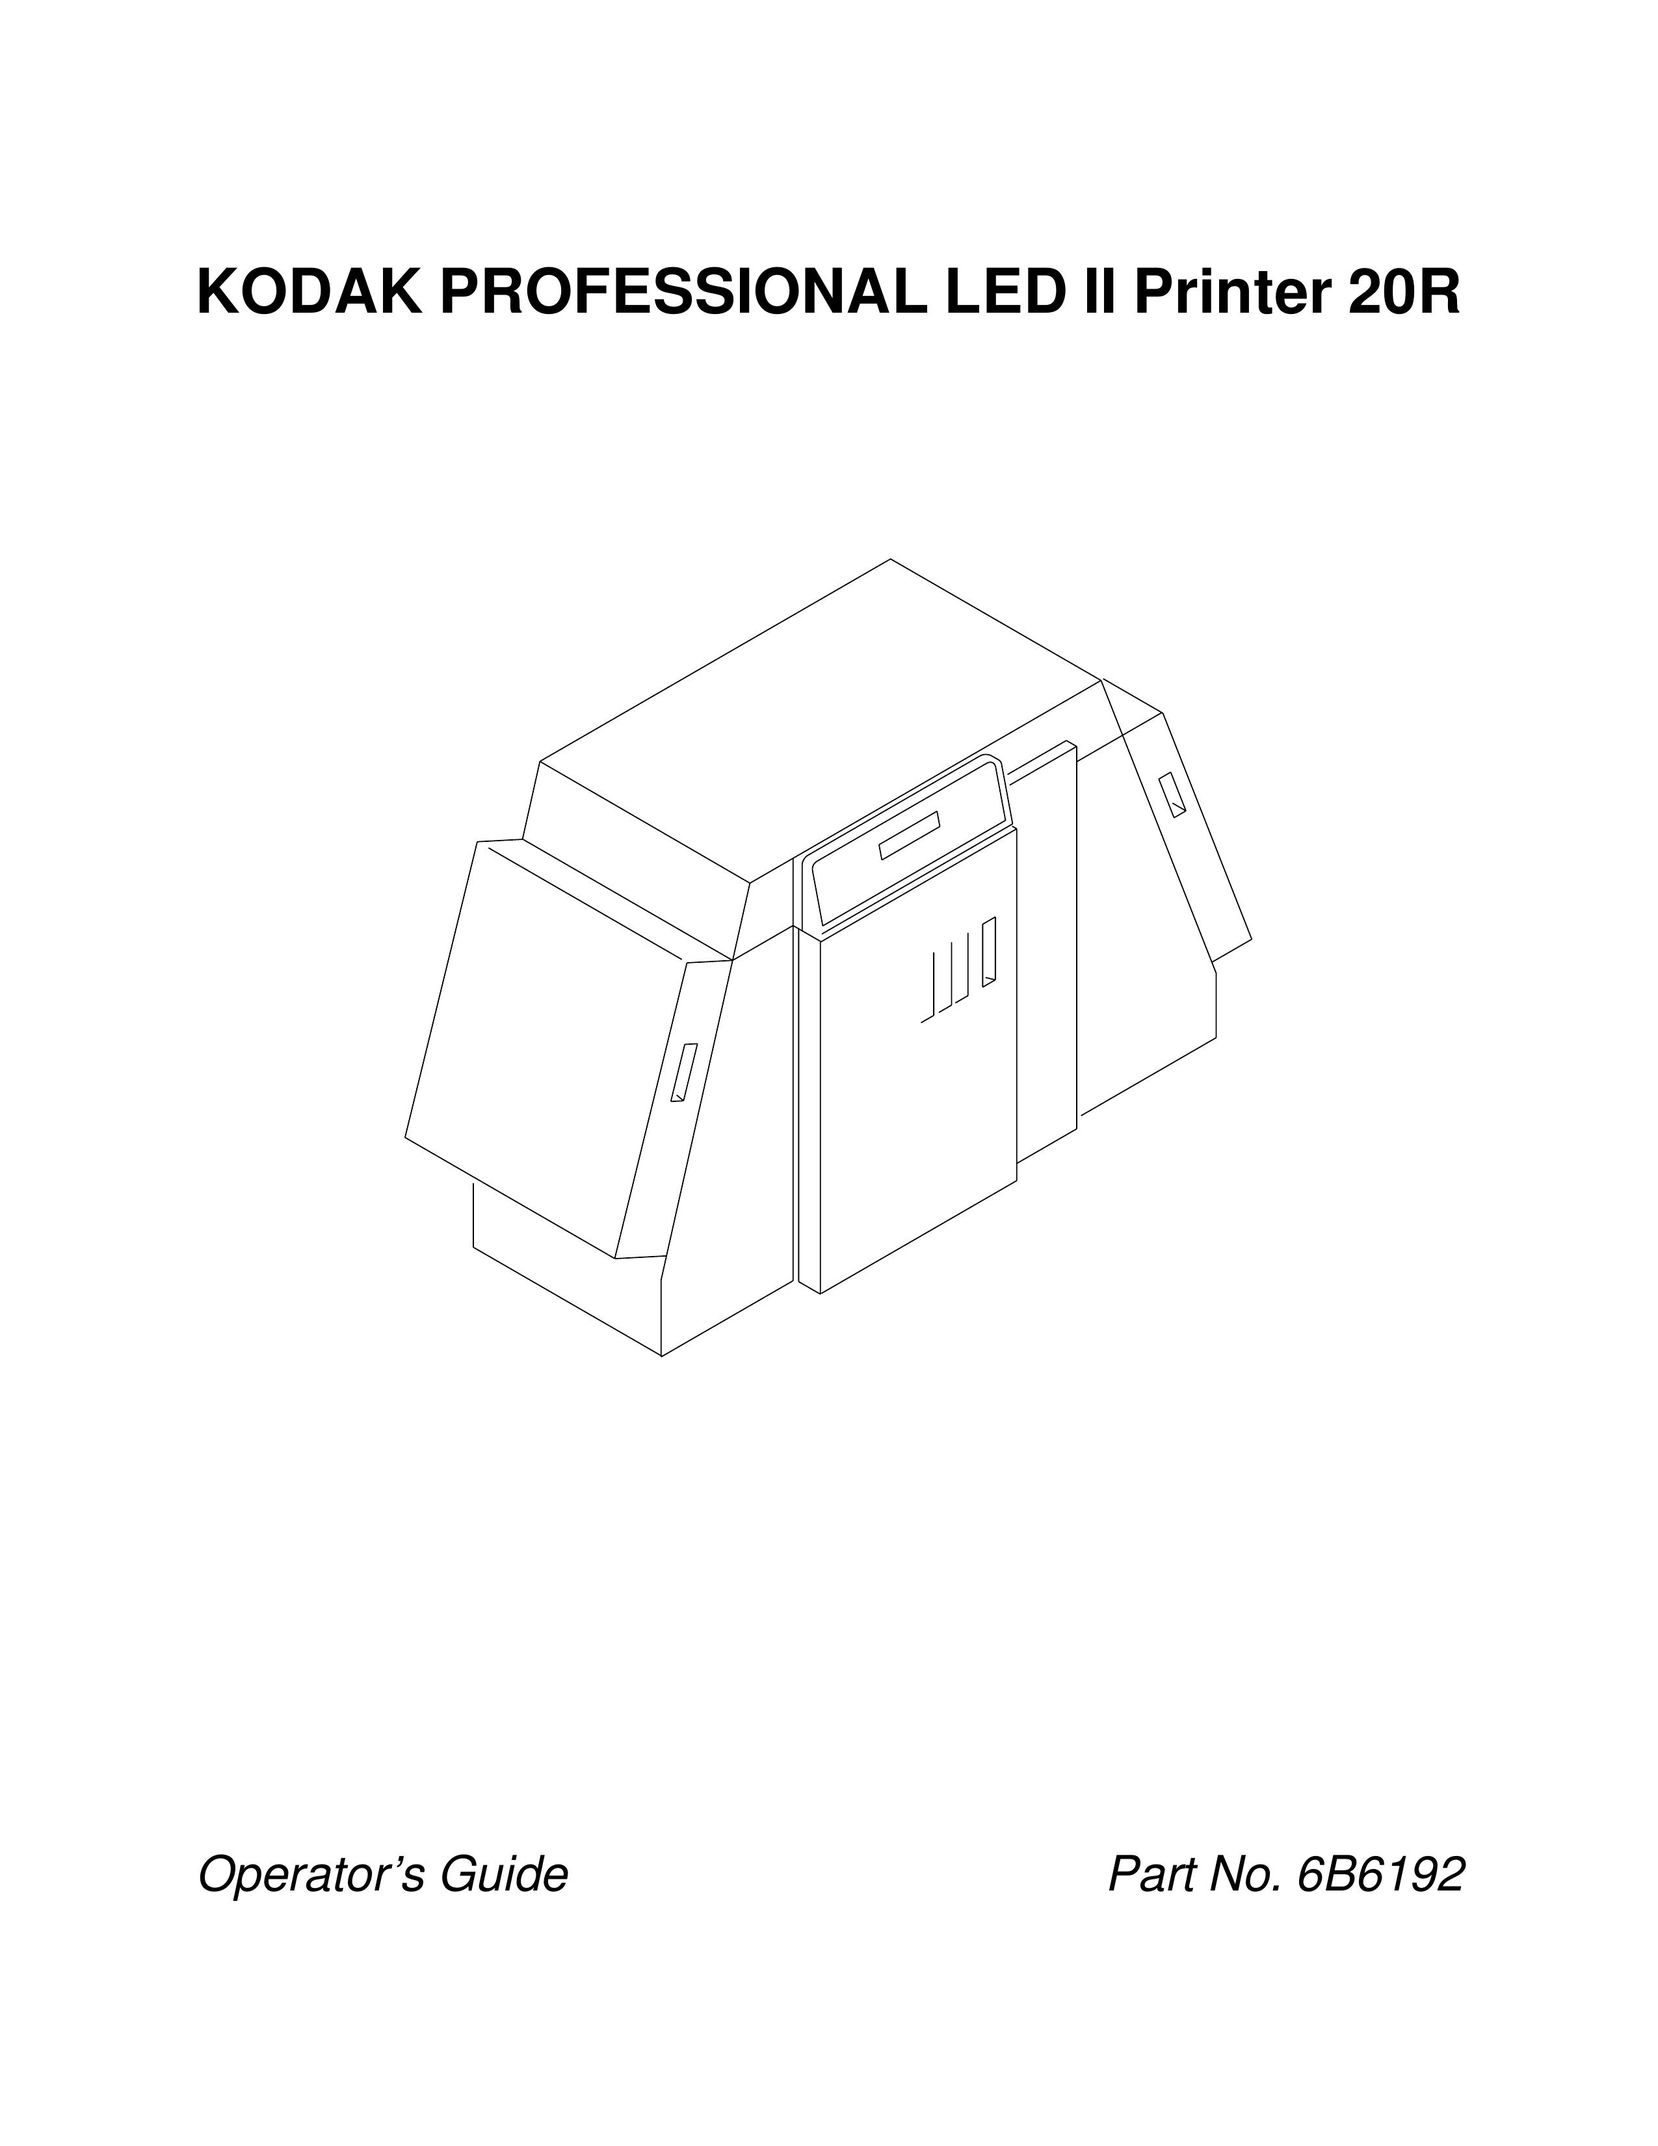 Kodak 20R Printer User Manual